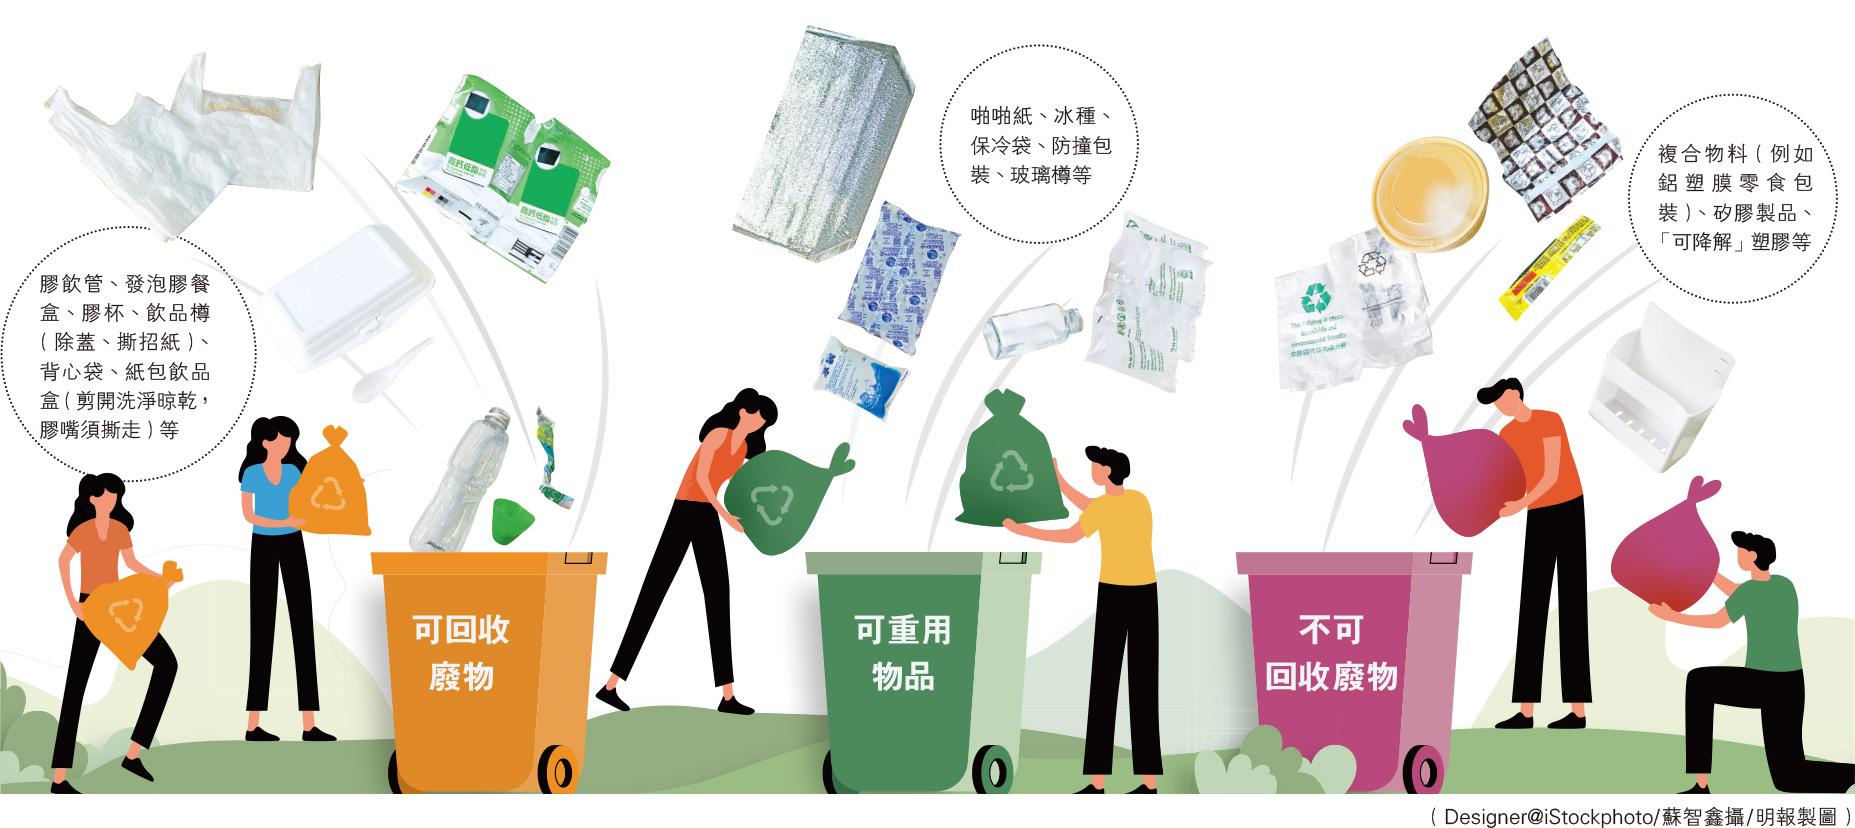 塑膠分7類 咪亂放入桶 分類清洗回收 化廢為寶